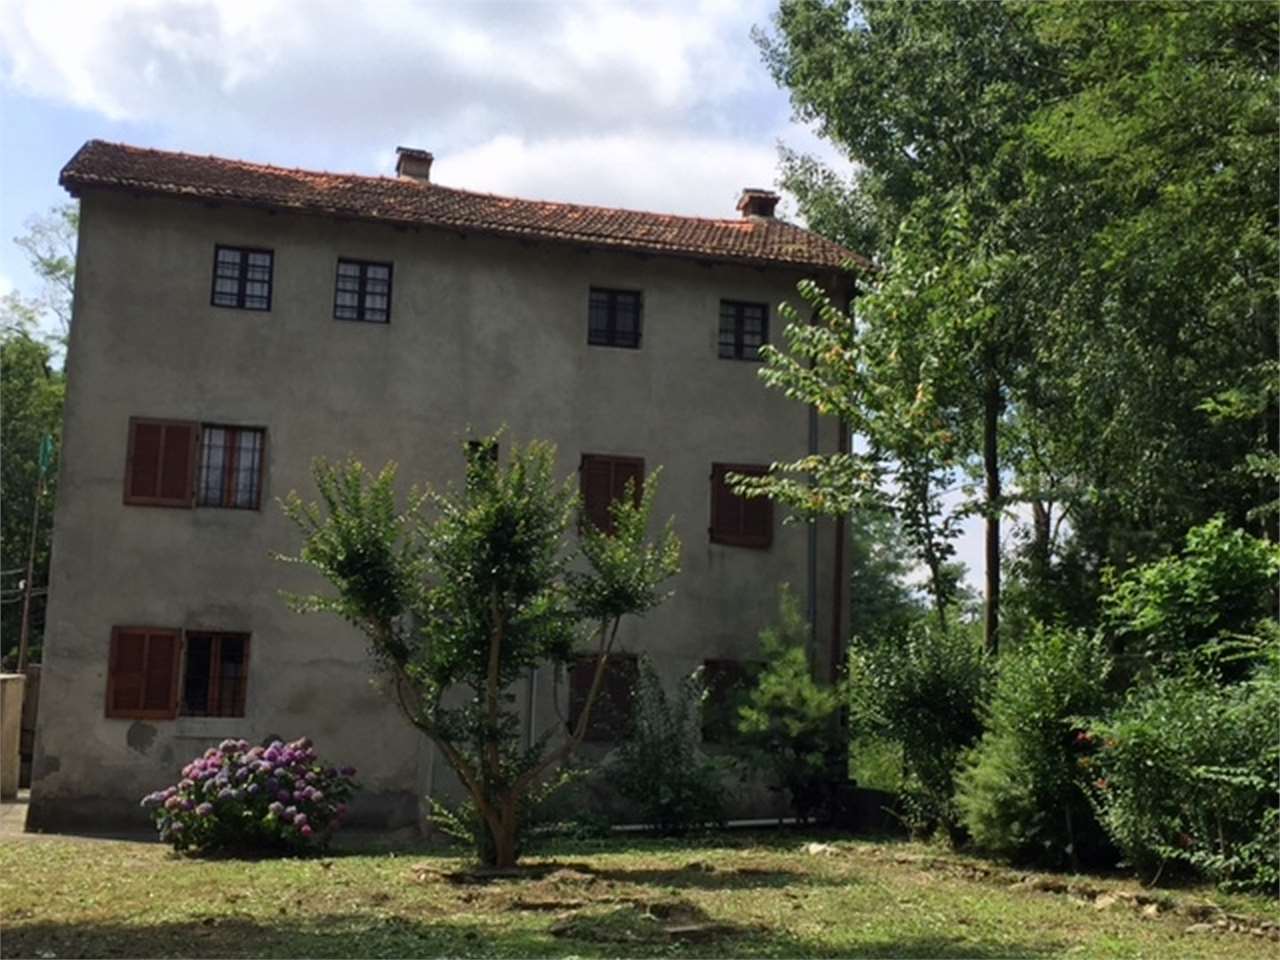 Vendita Casa Indipendente Casa/Villa Gattico-Veruno via per revislate  279205